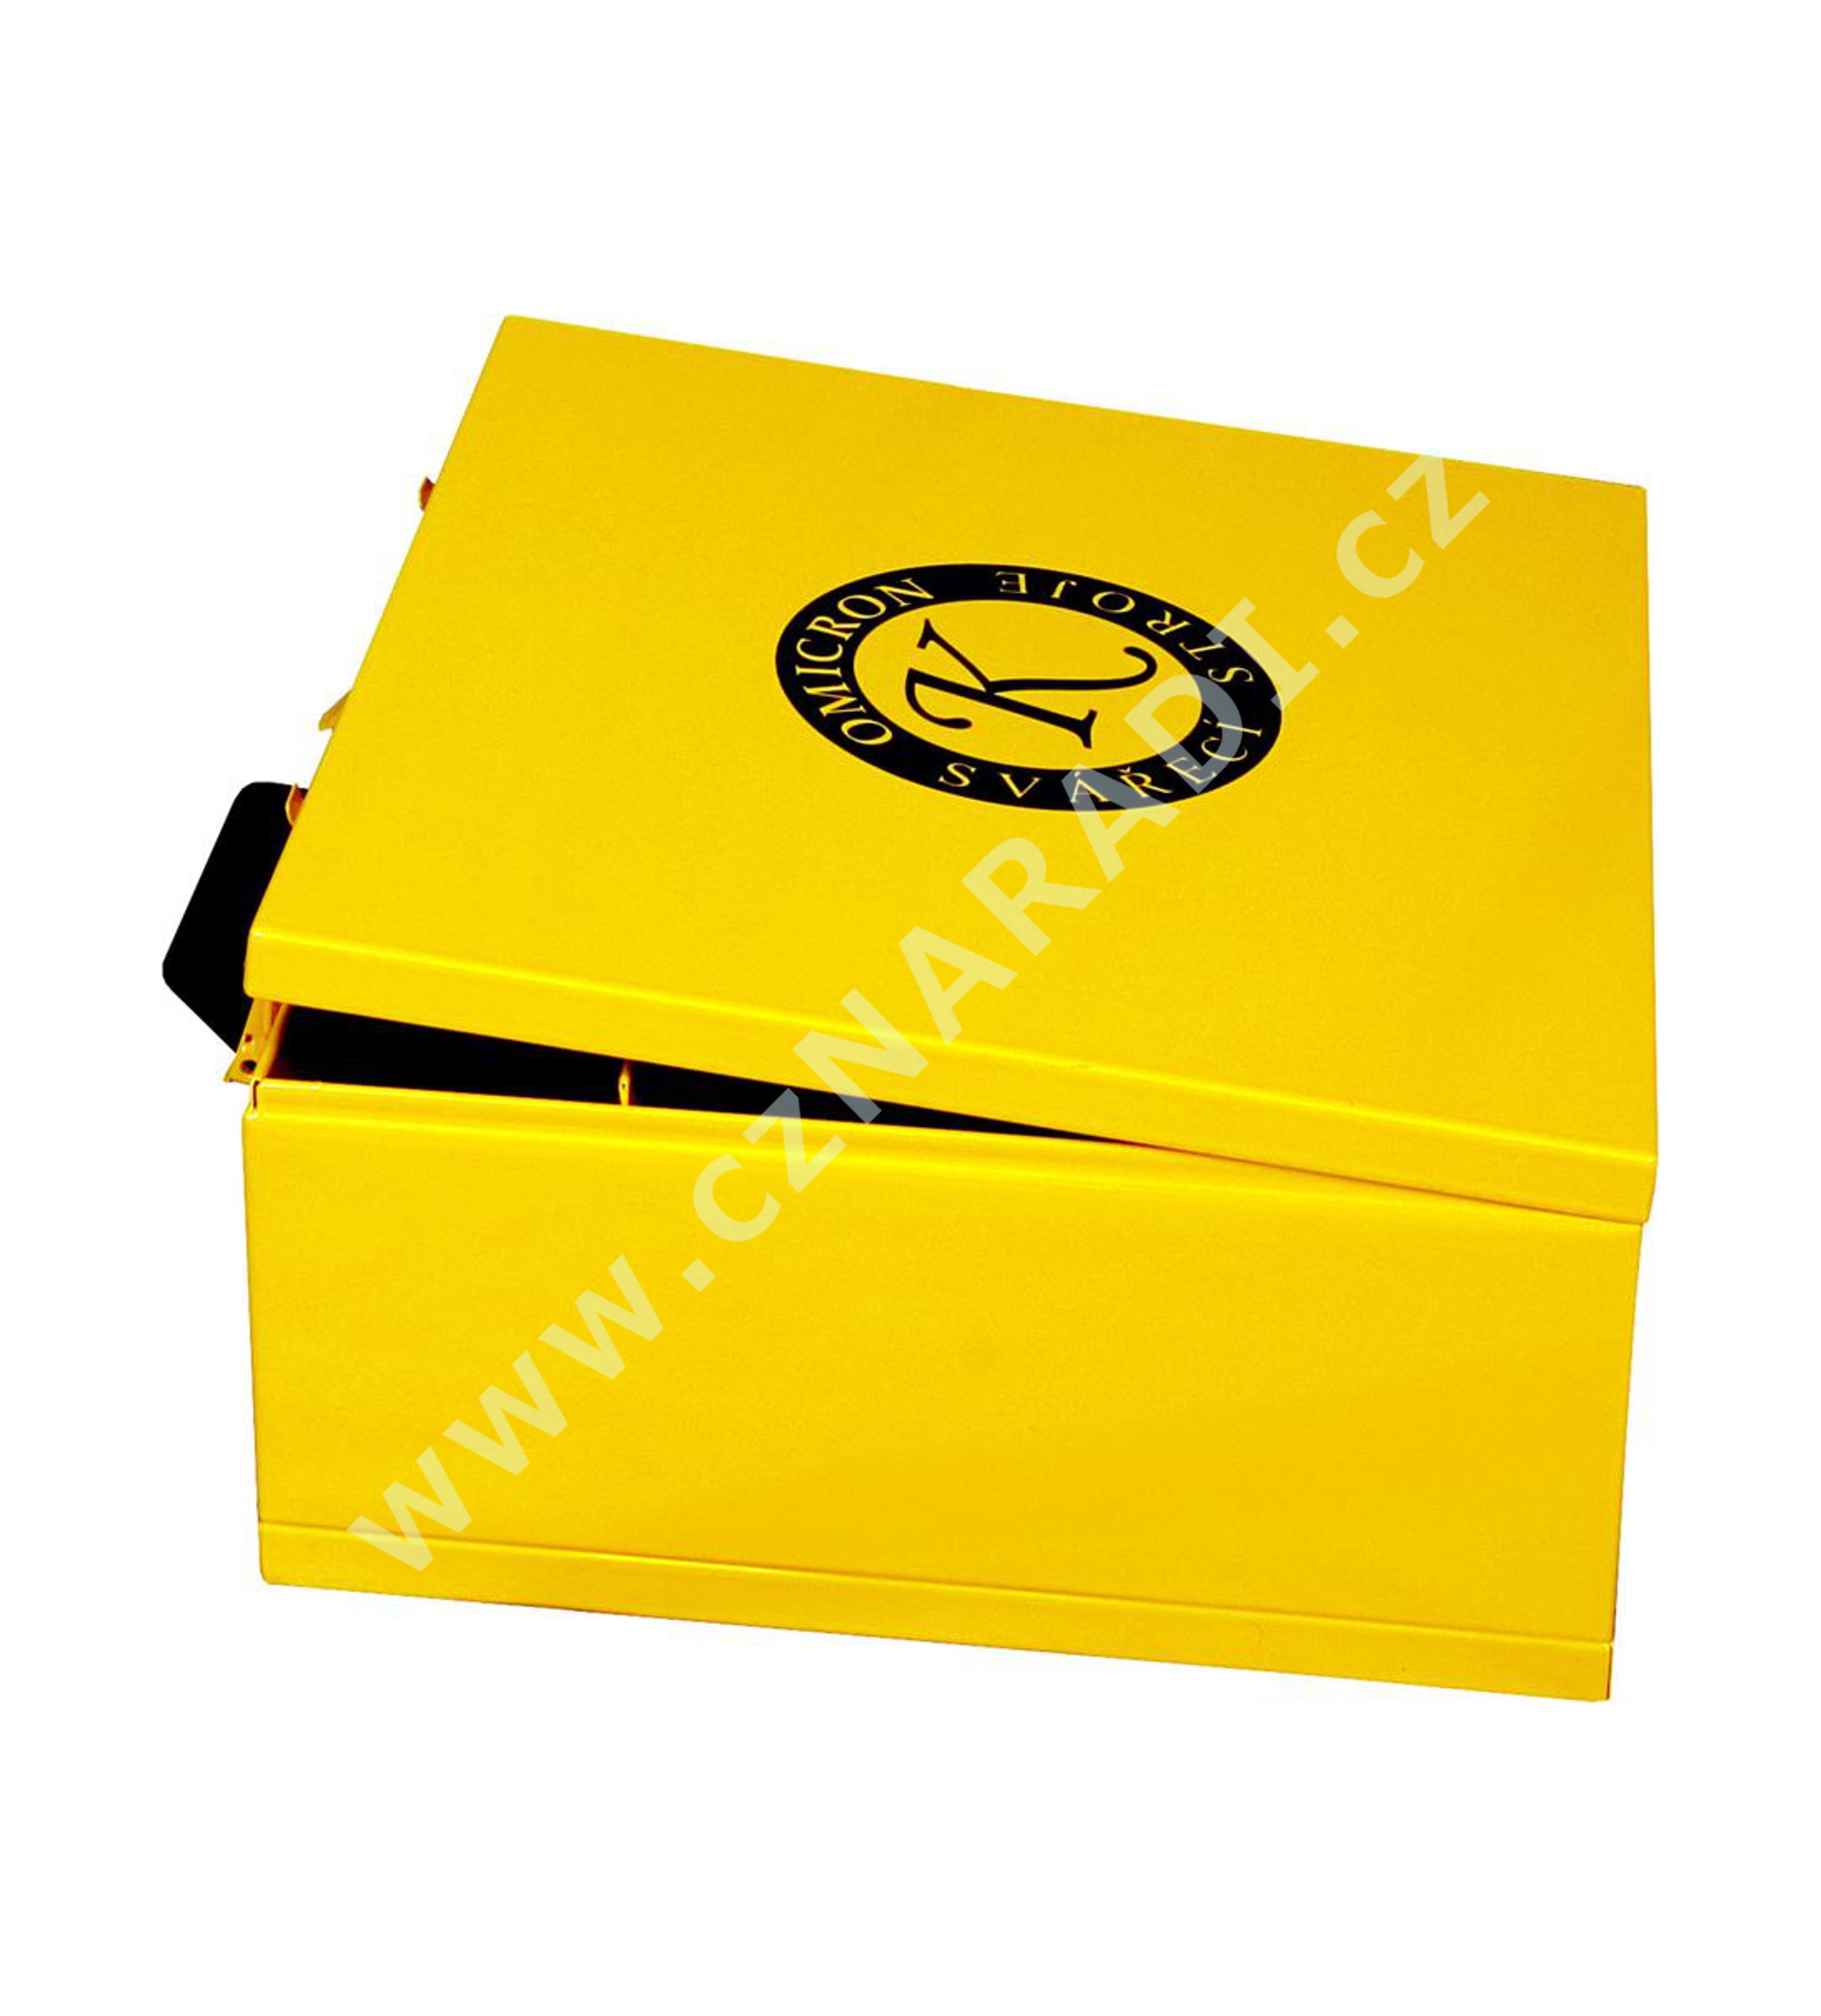 Kufr pro Invertor a příslušenství GAMA - žlutý